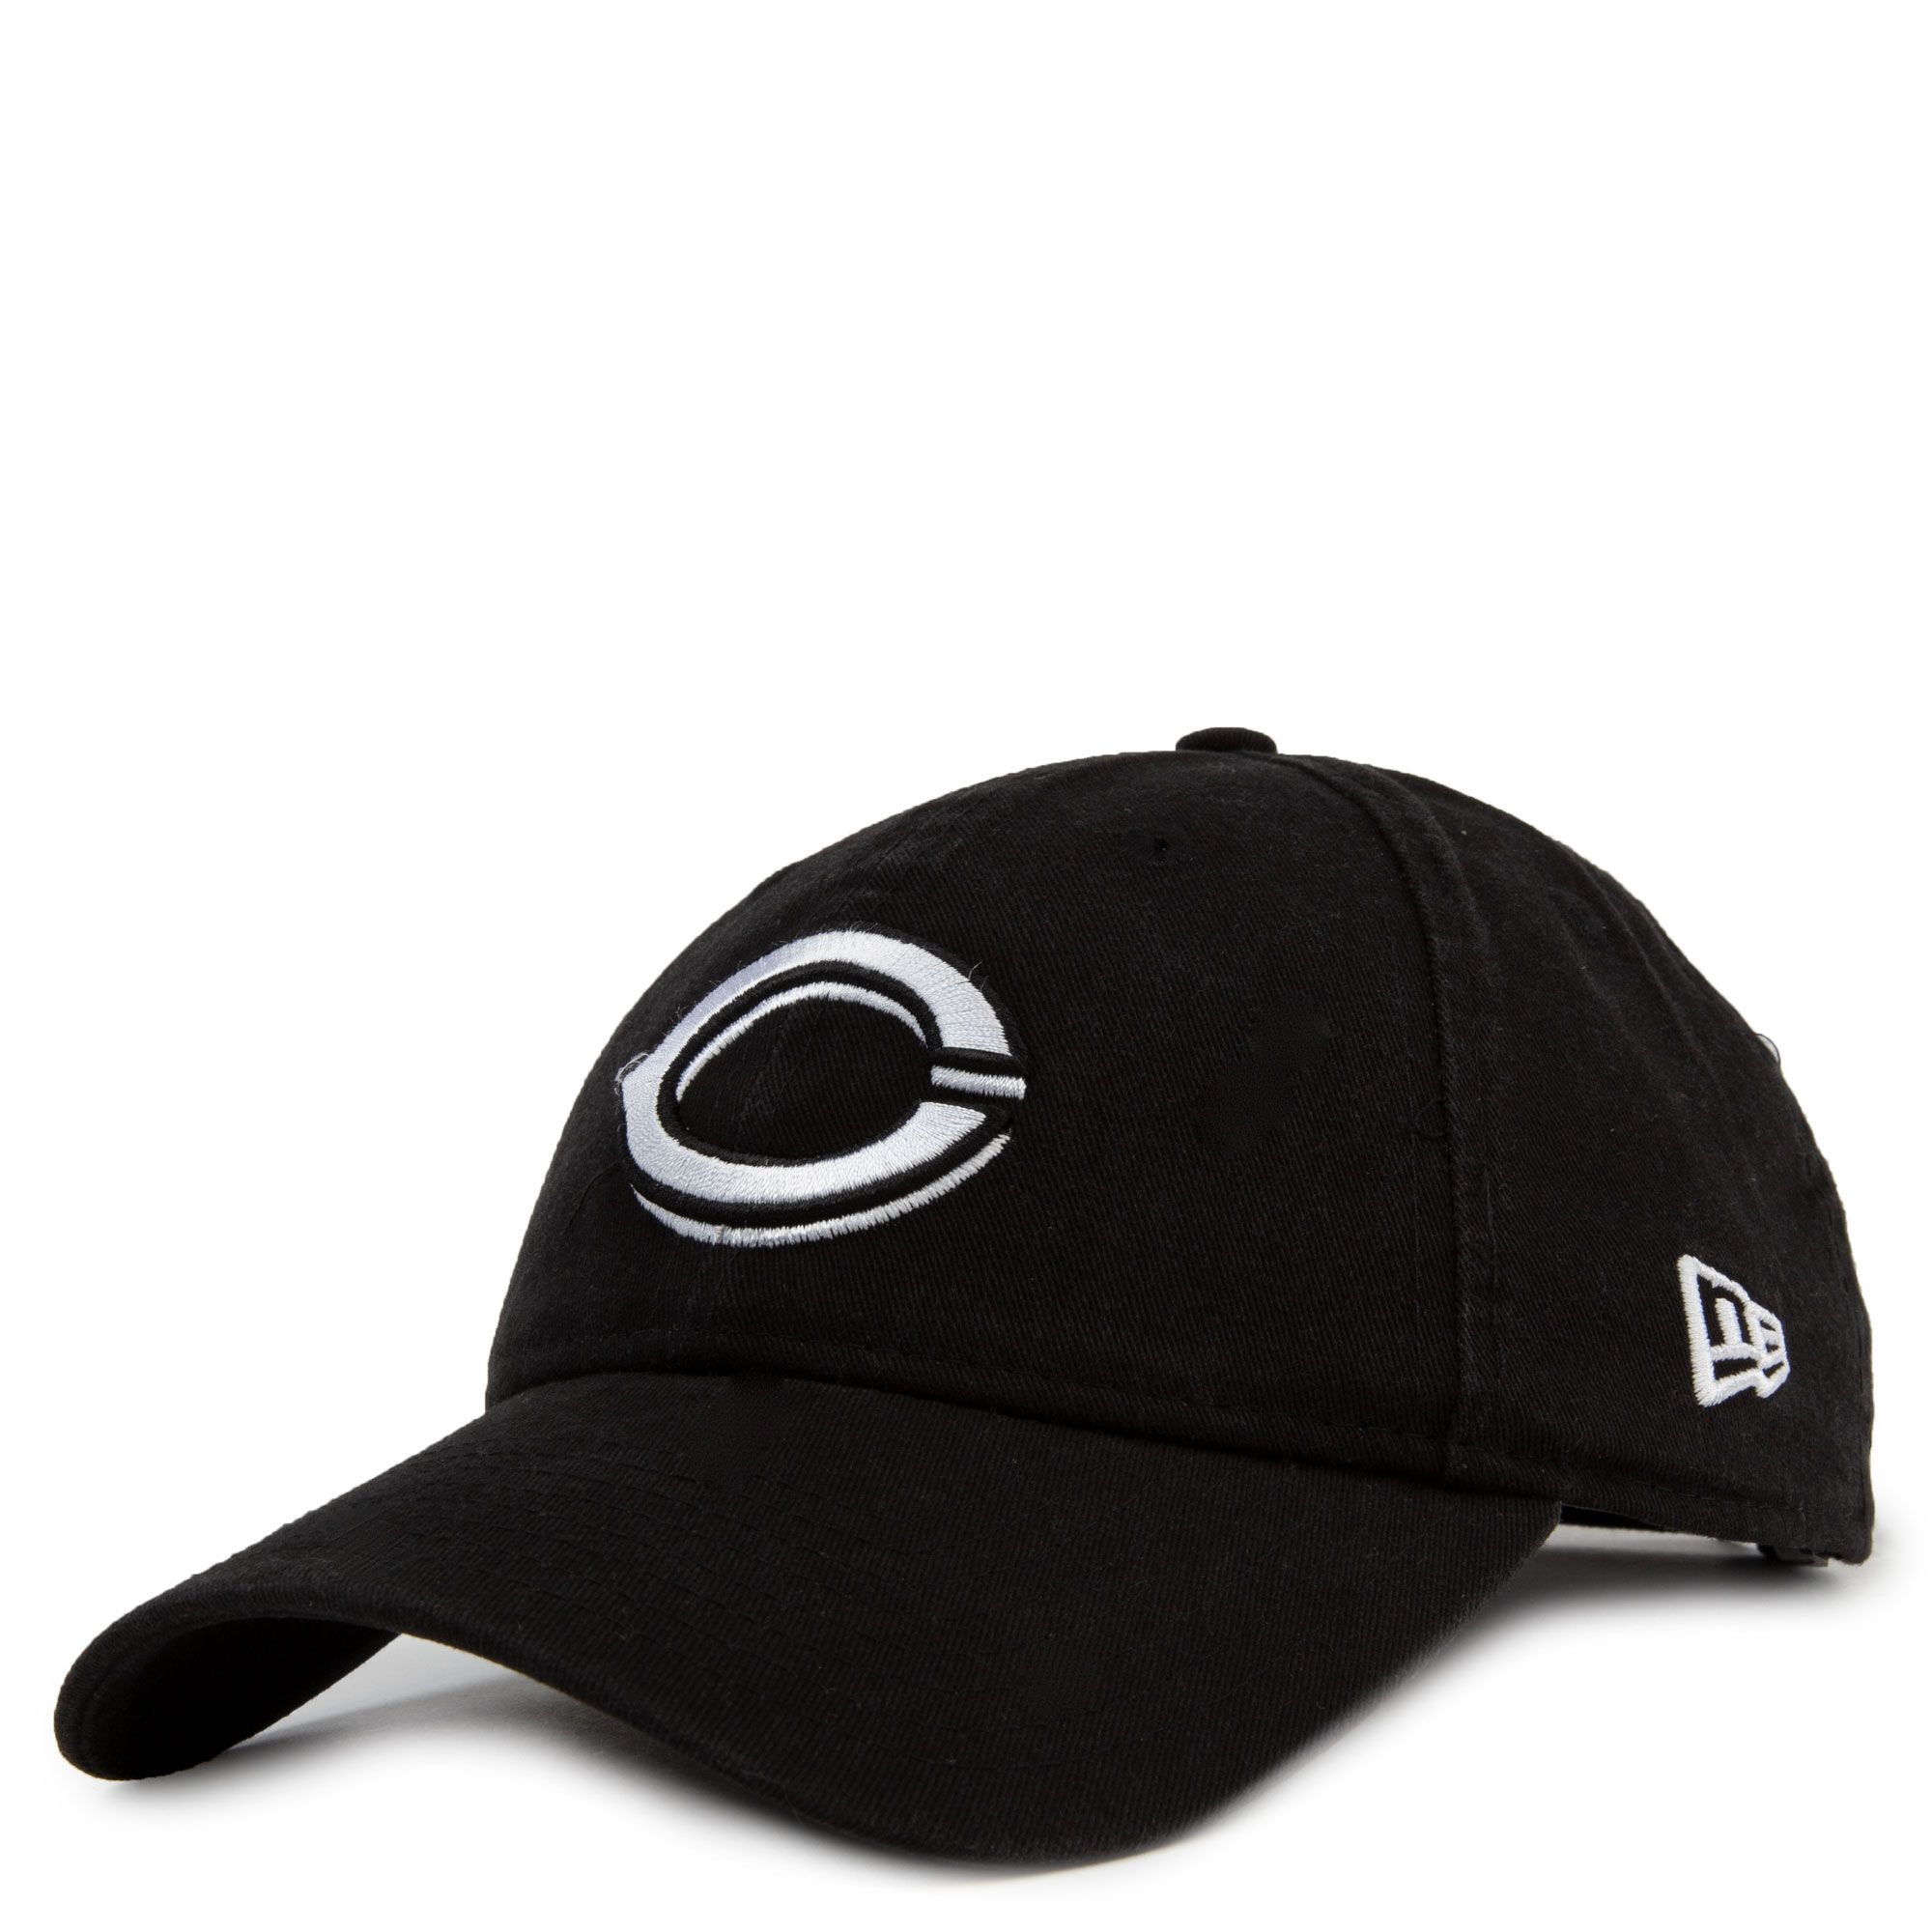 Cincinnati Reds MLB Puma Vintage Snapback Hat